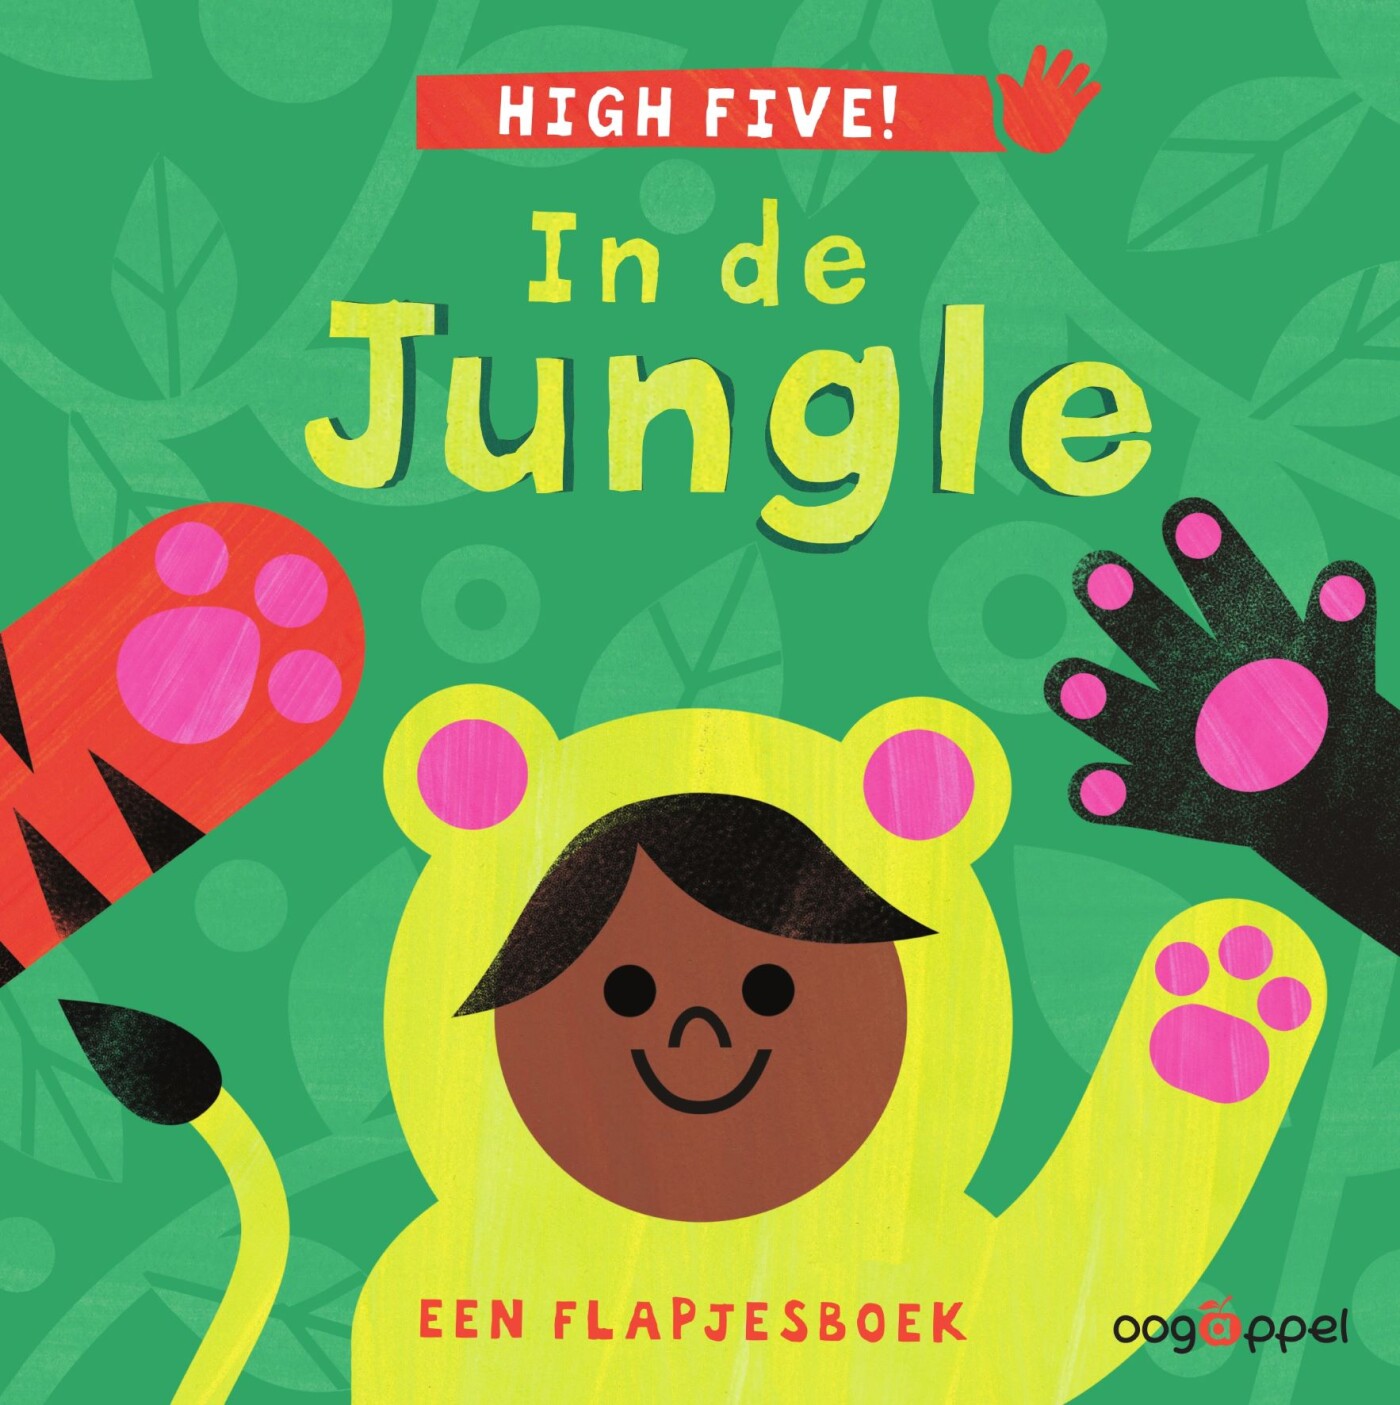 High five! In de jungle